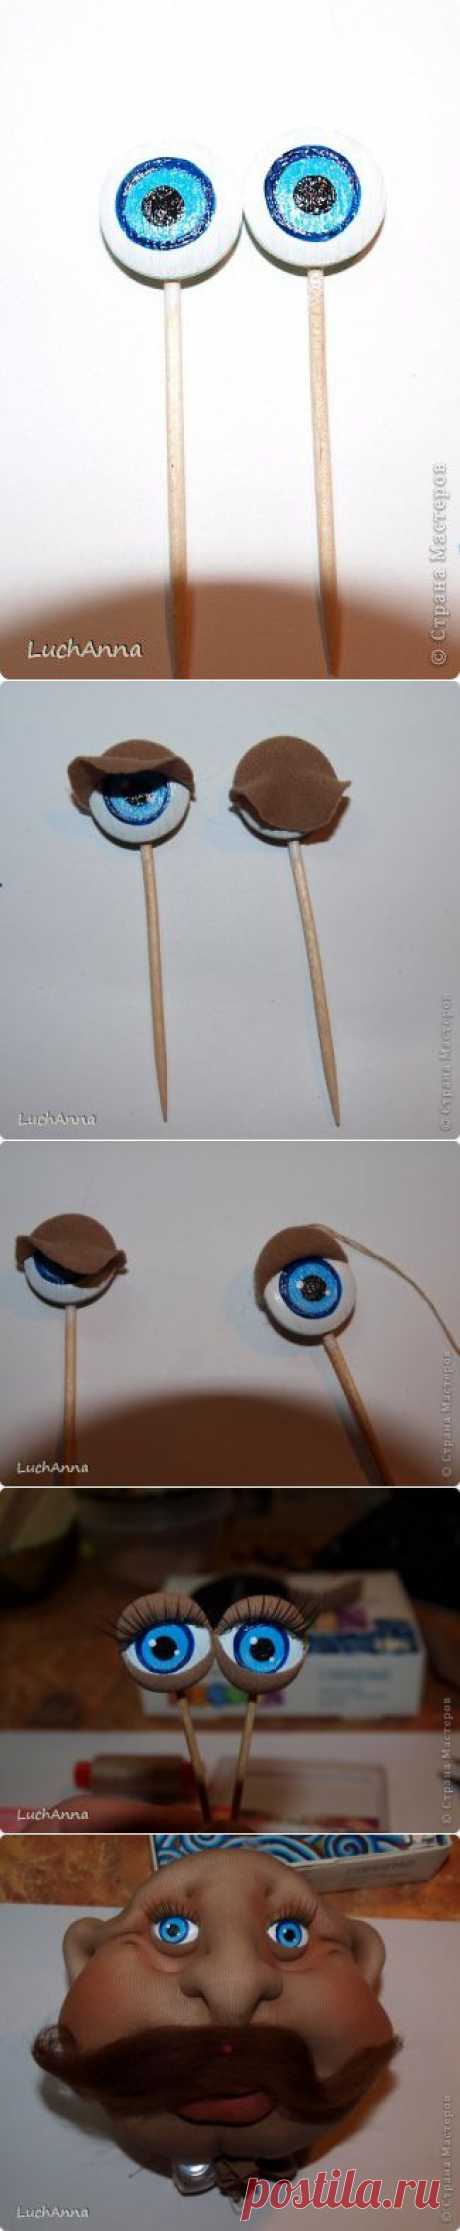 Как сделать кукле или игрушке глаза своими руками / Мастер-класс